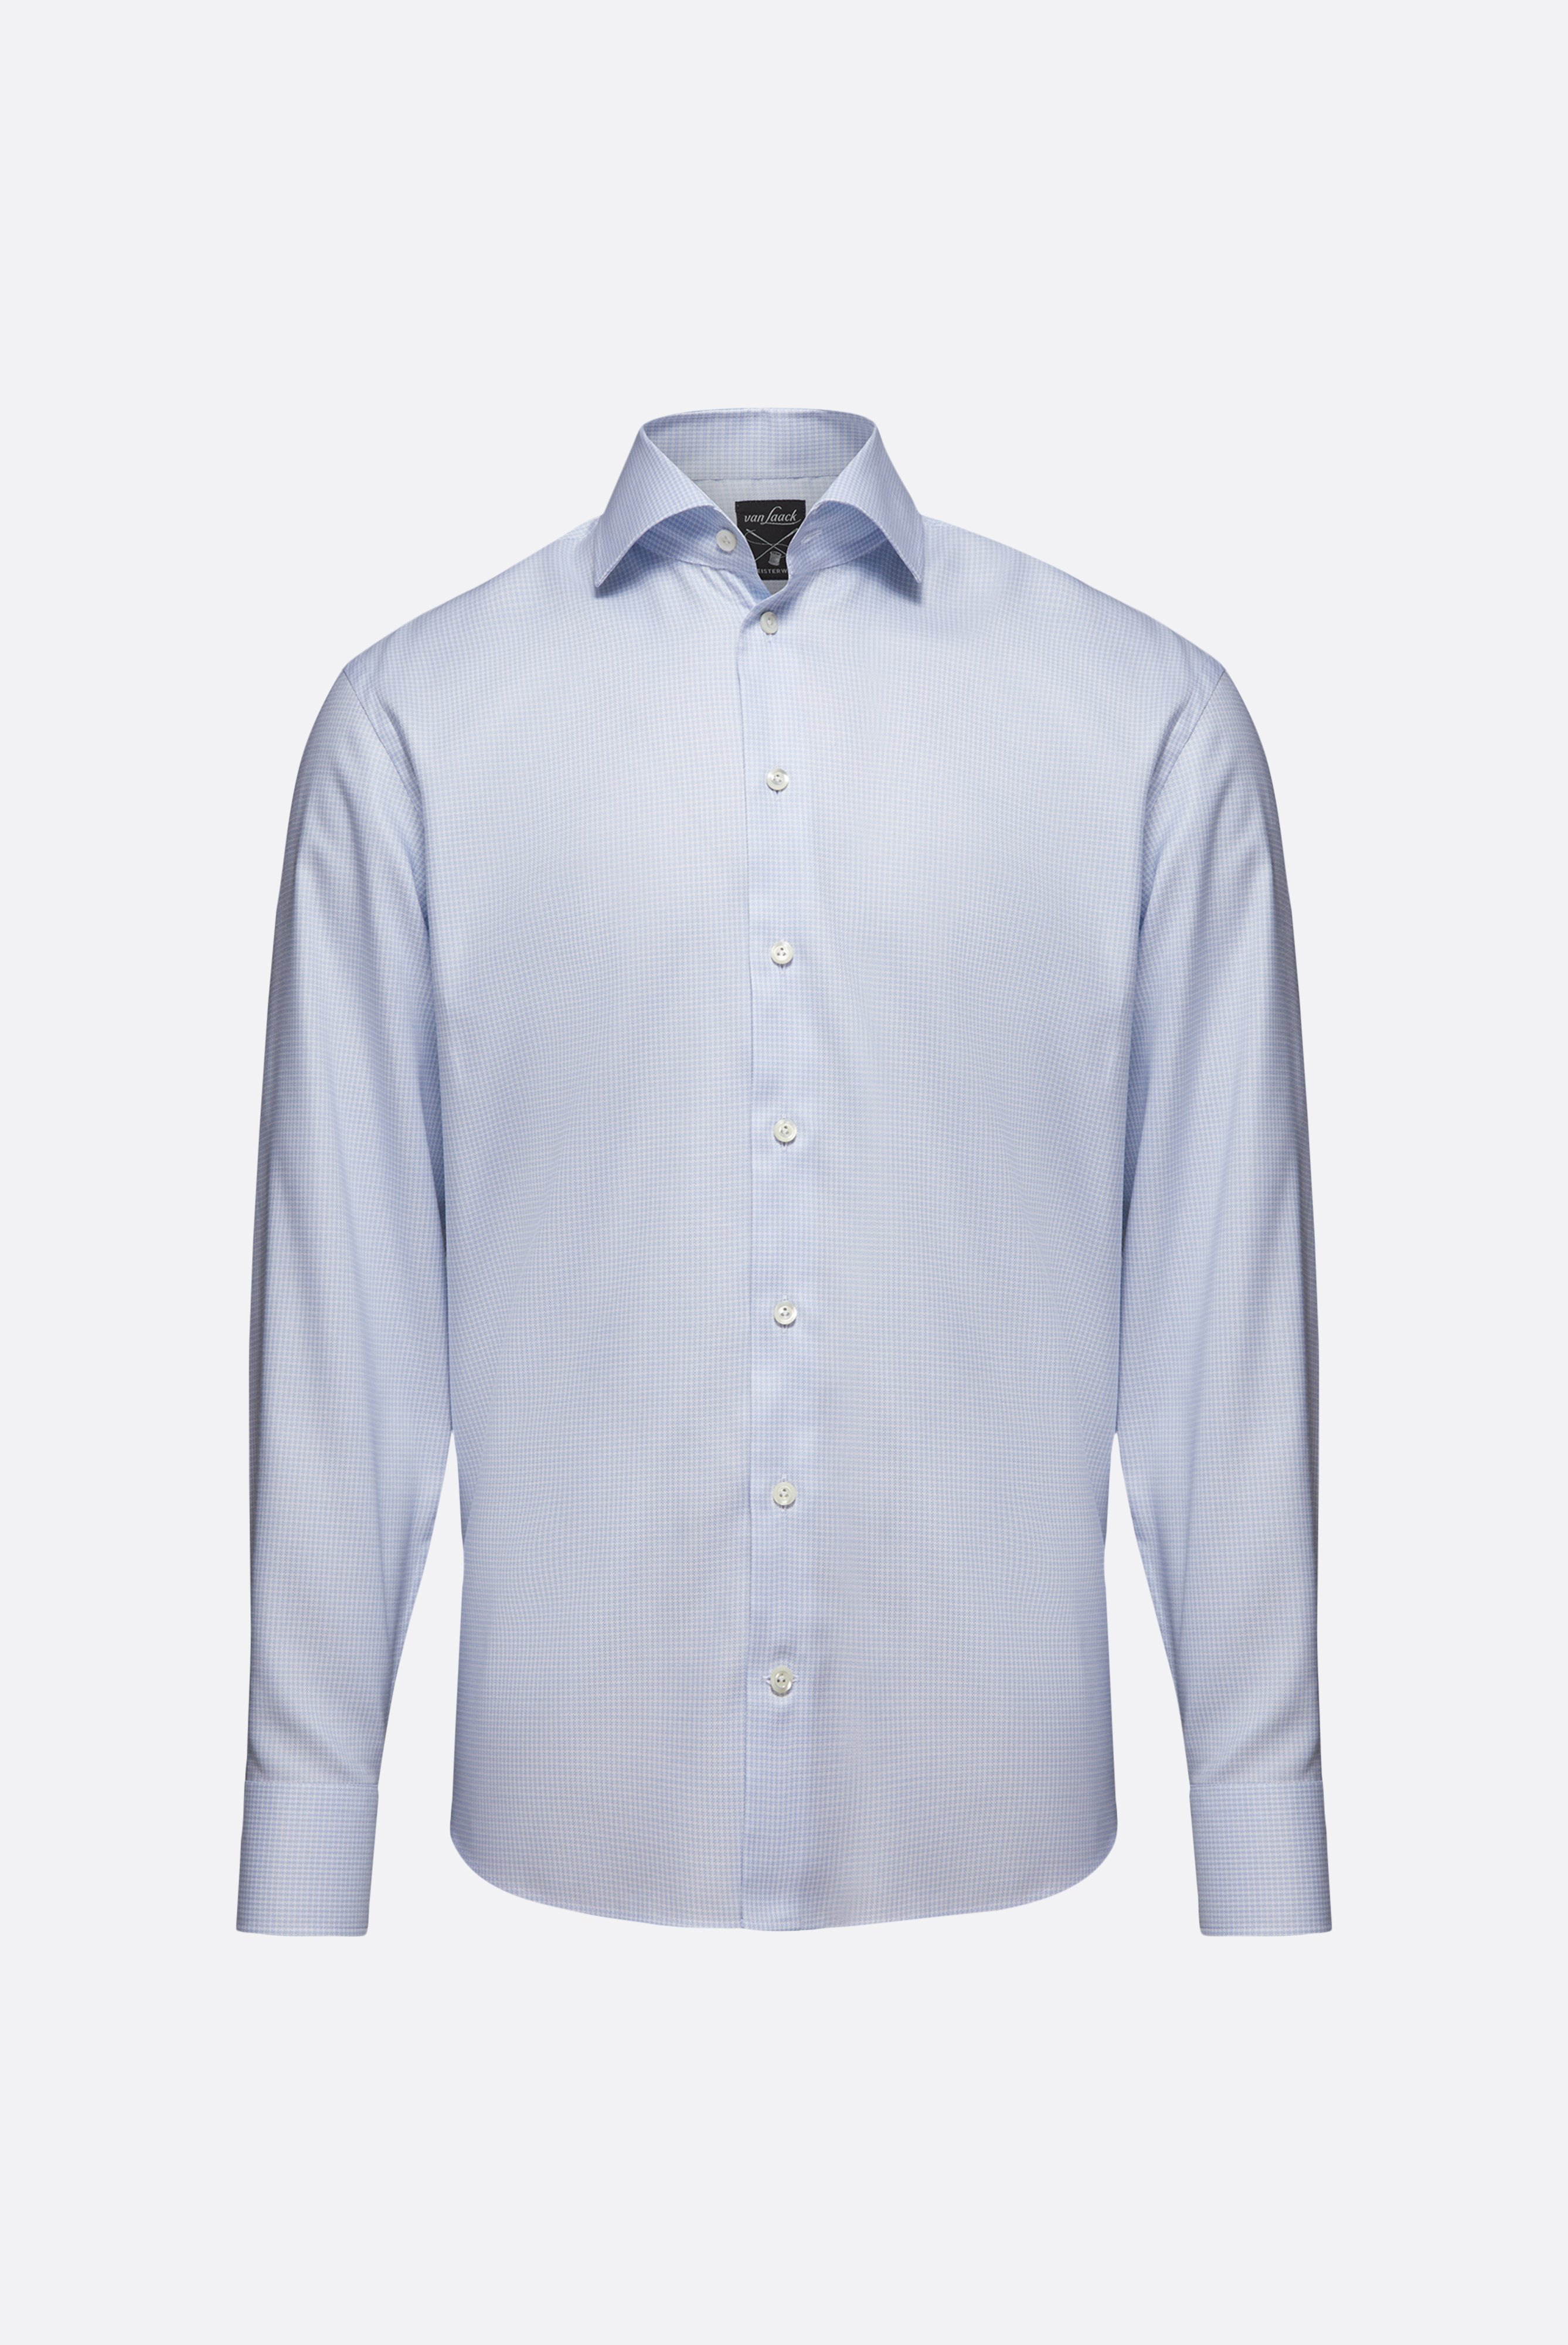 Bügelleichte Hemden+Bügelfreies Hemd mit Hahnentrittmuster Tailor Fit+20.2020.BQ.161101.720.41